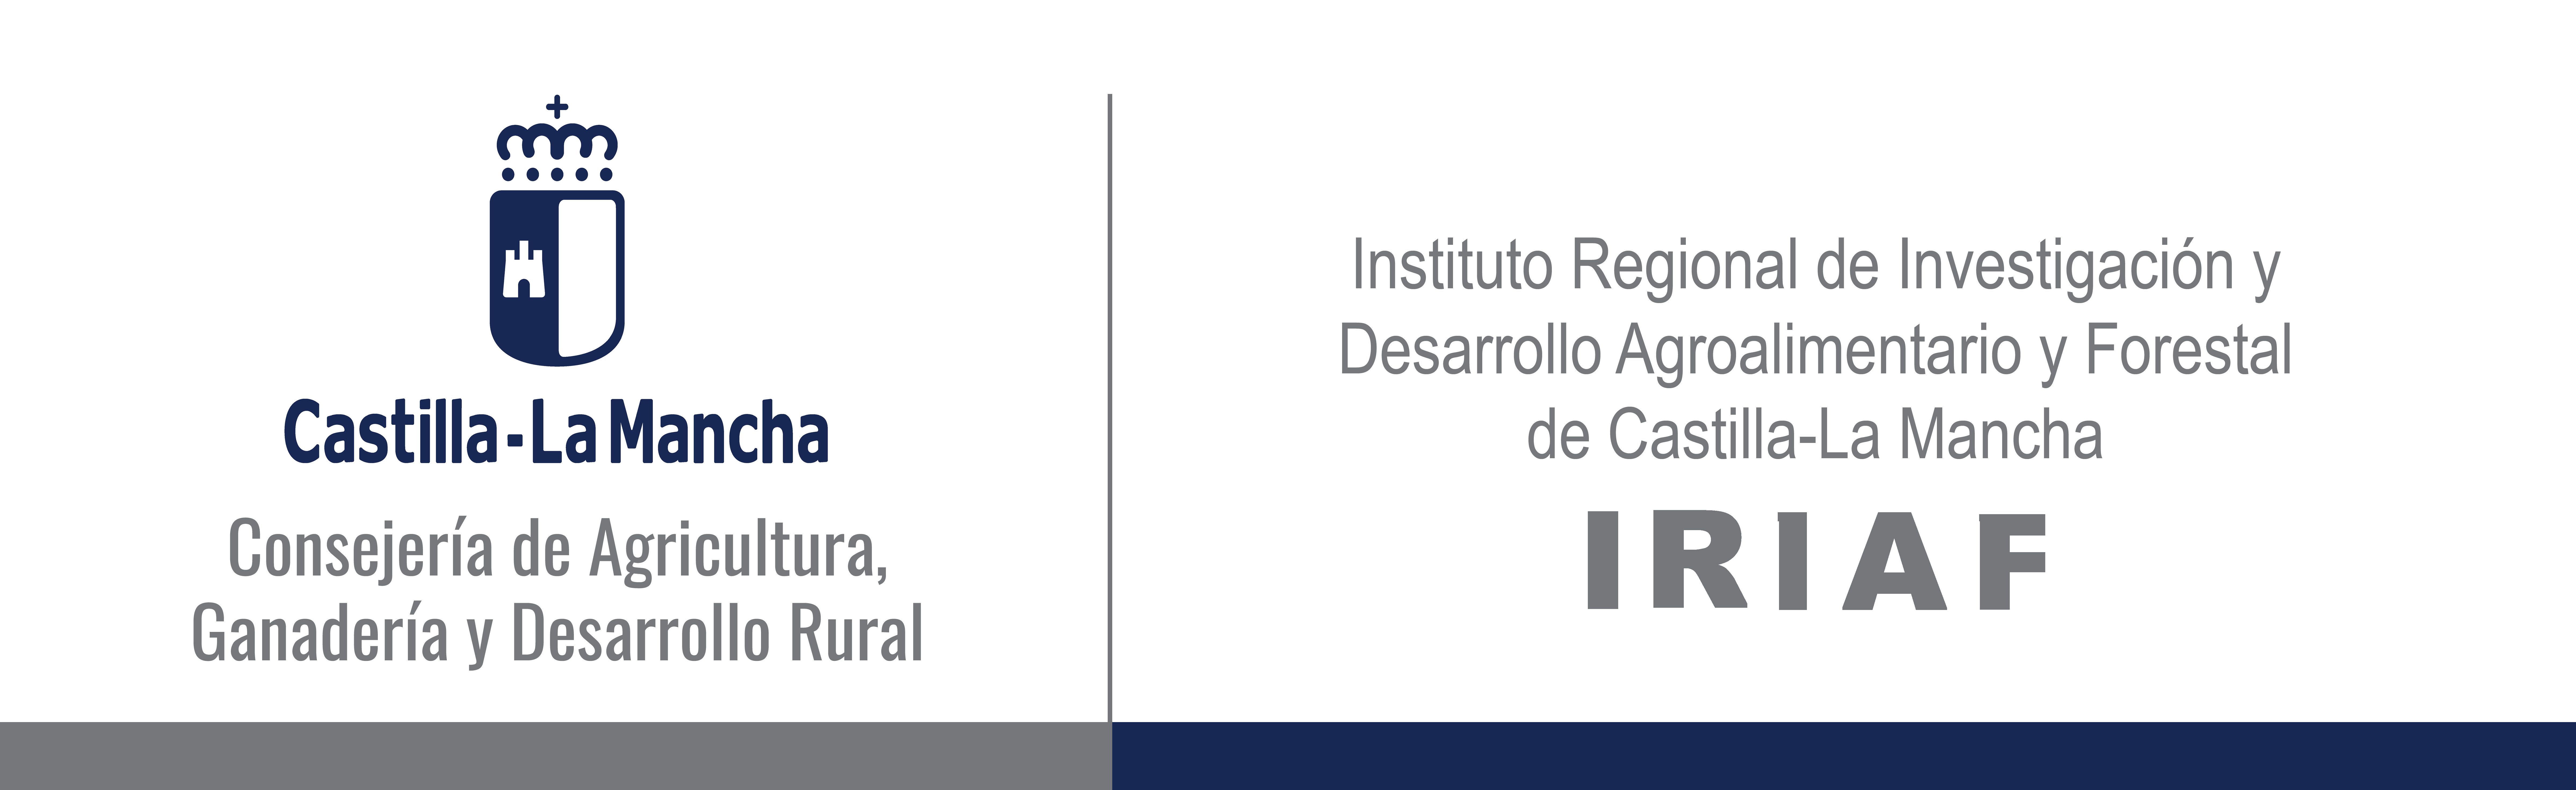 Bienvenidos al IRIAF. Instituto Regional de Investigación y Desarrollo Agroalimentario y Forestal de Castilla-La Mancha